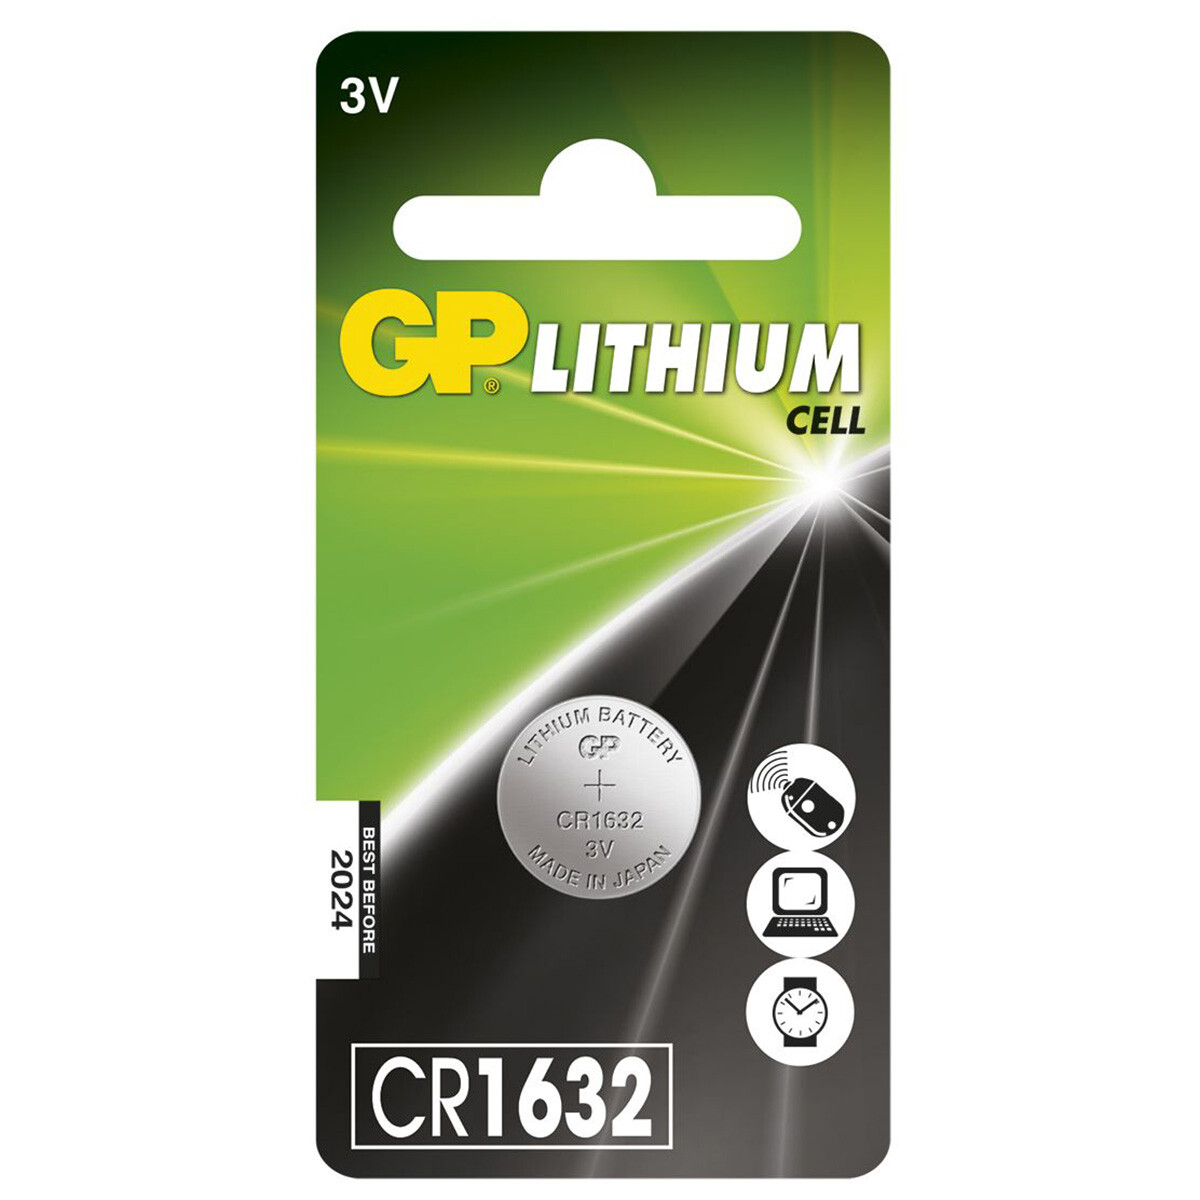 Se GP Lithium 3V CR1632 C1 Knapcelle Batteri hos Specialbutikken